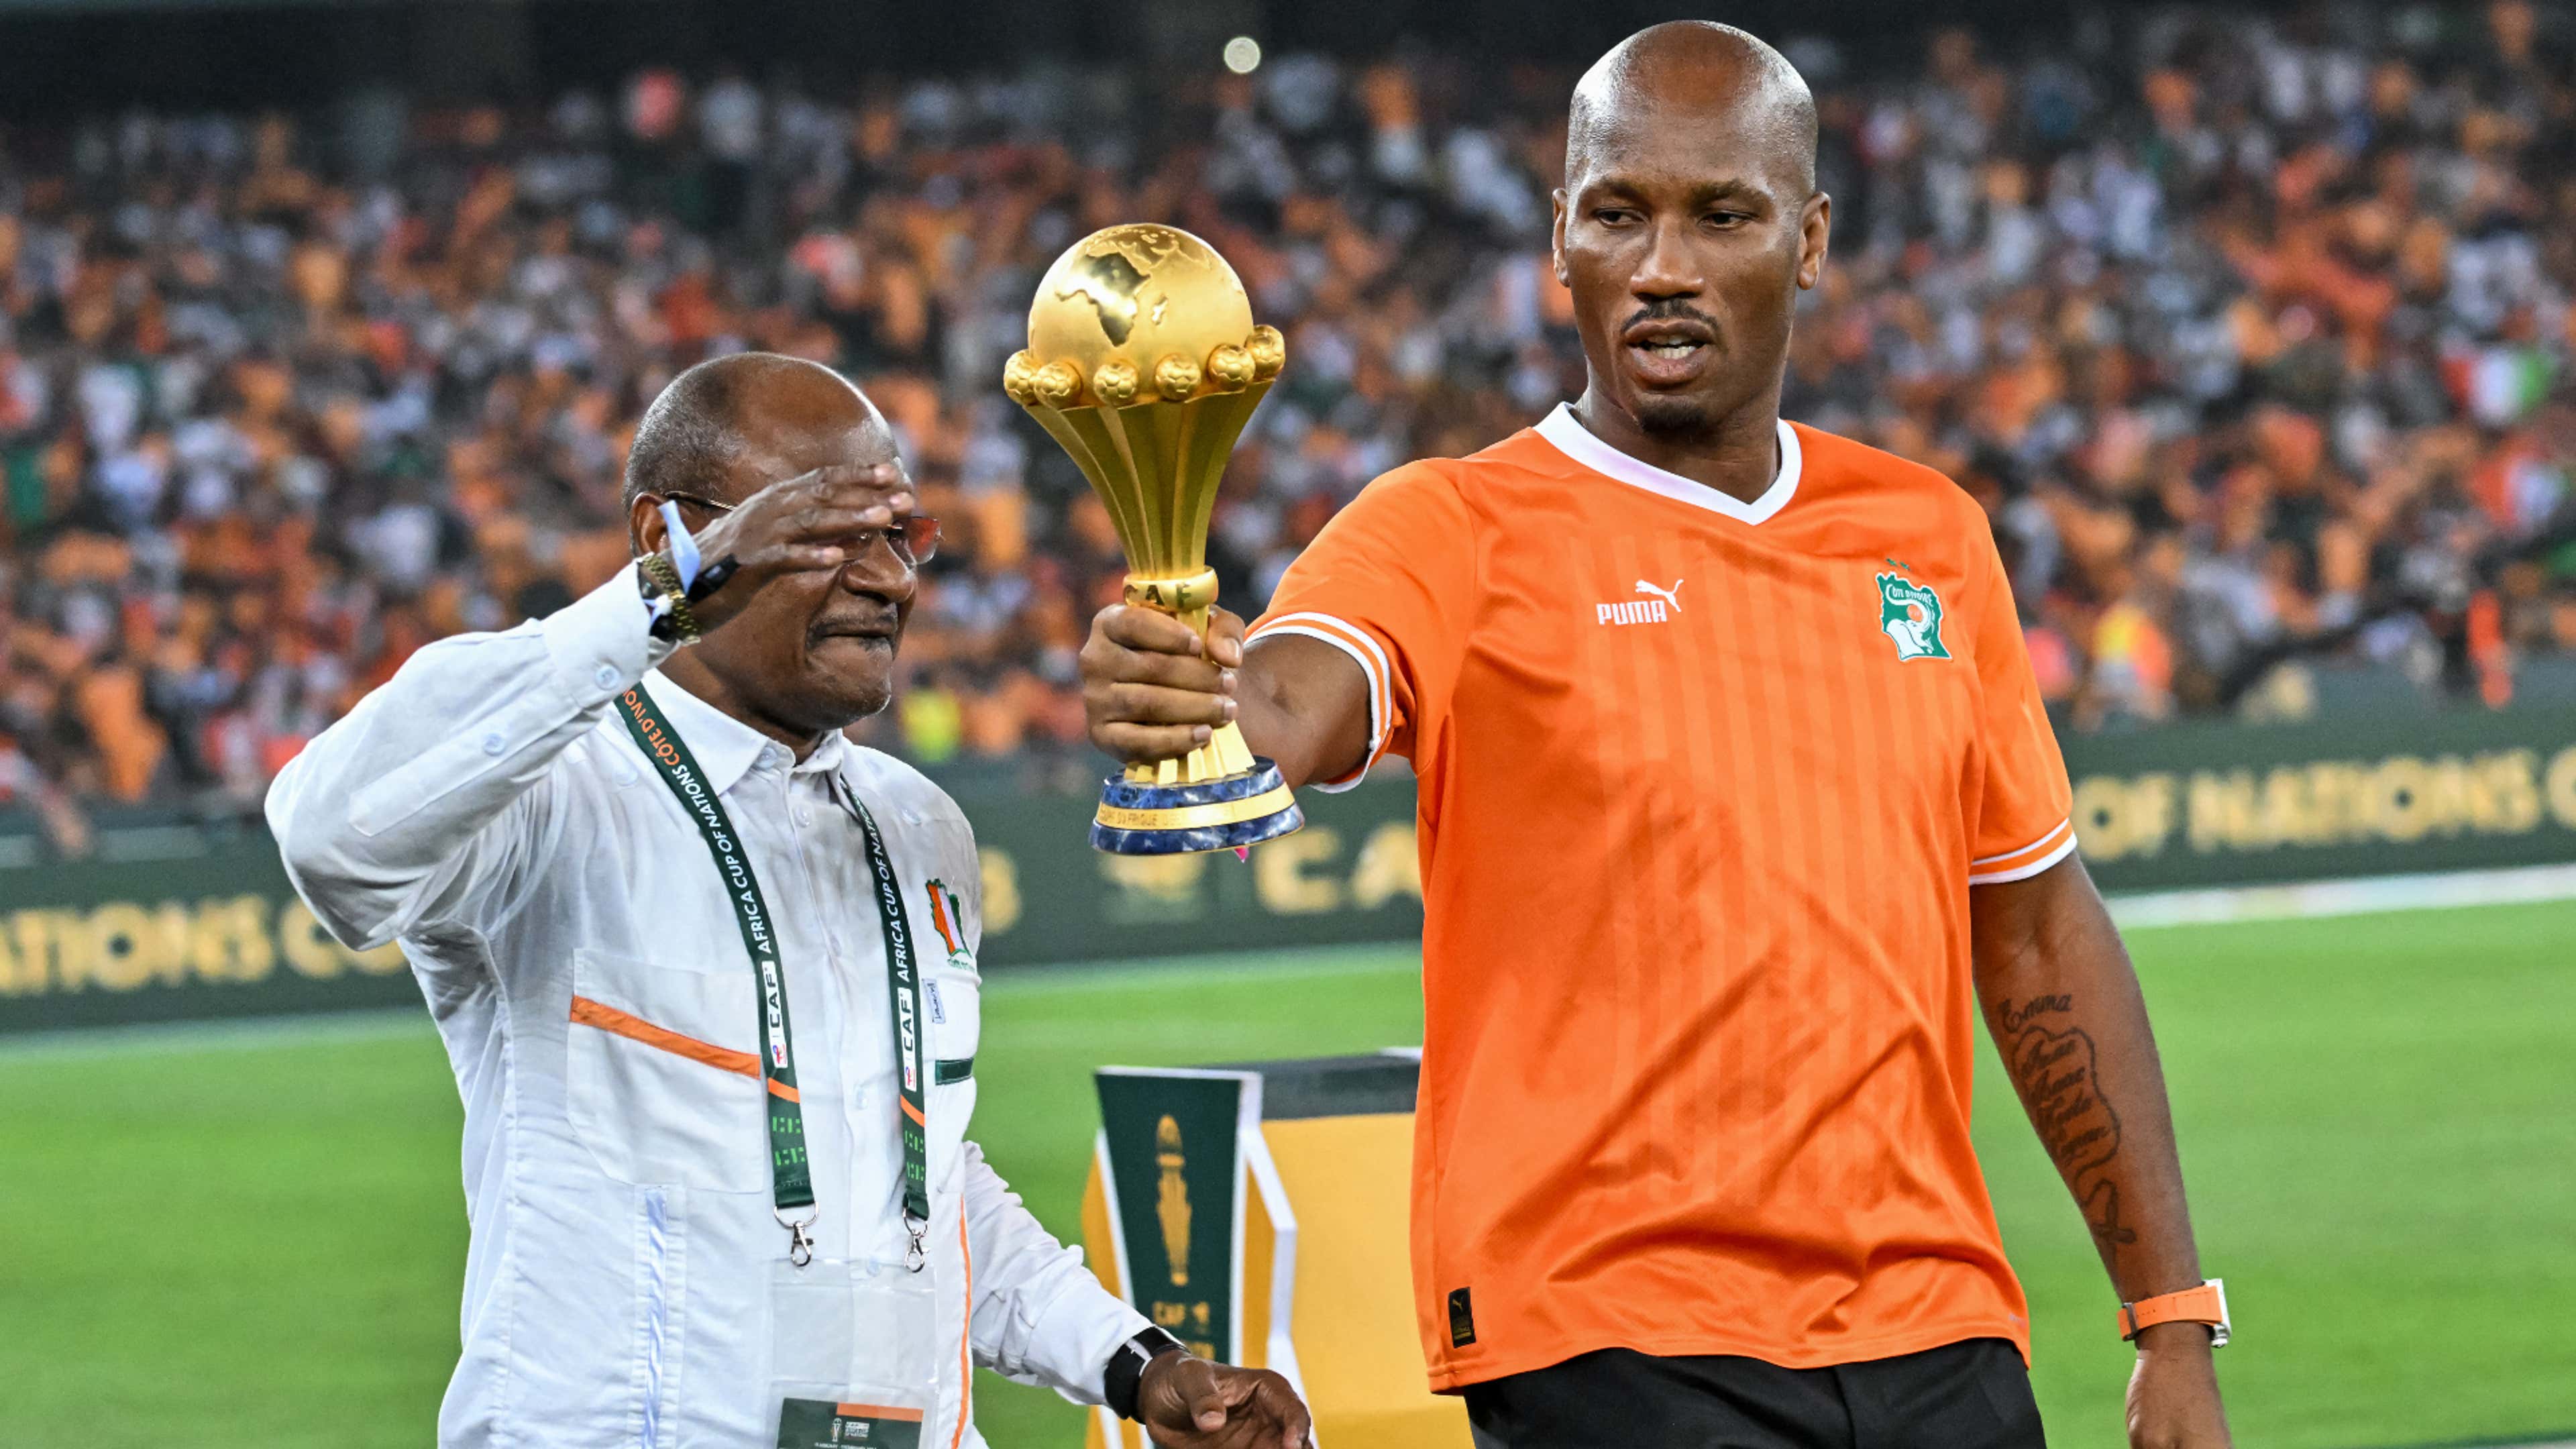 Drogba protagonista di Nigeria-Costa d'Avorio: porta la coppa in campo ed è virale per la sua esultanza | Goal.com Italia